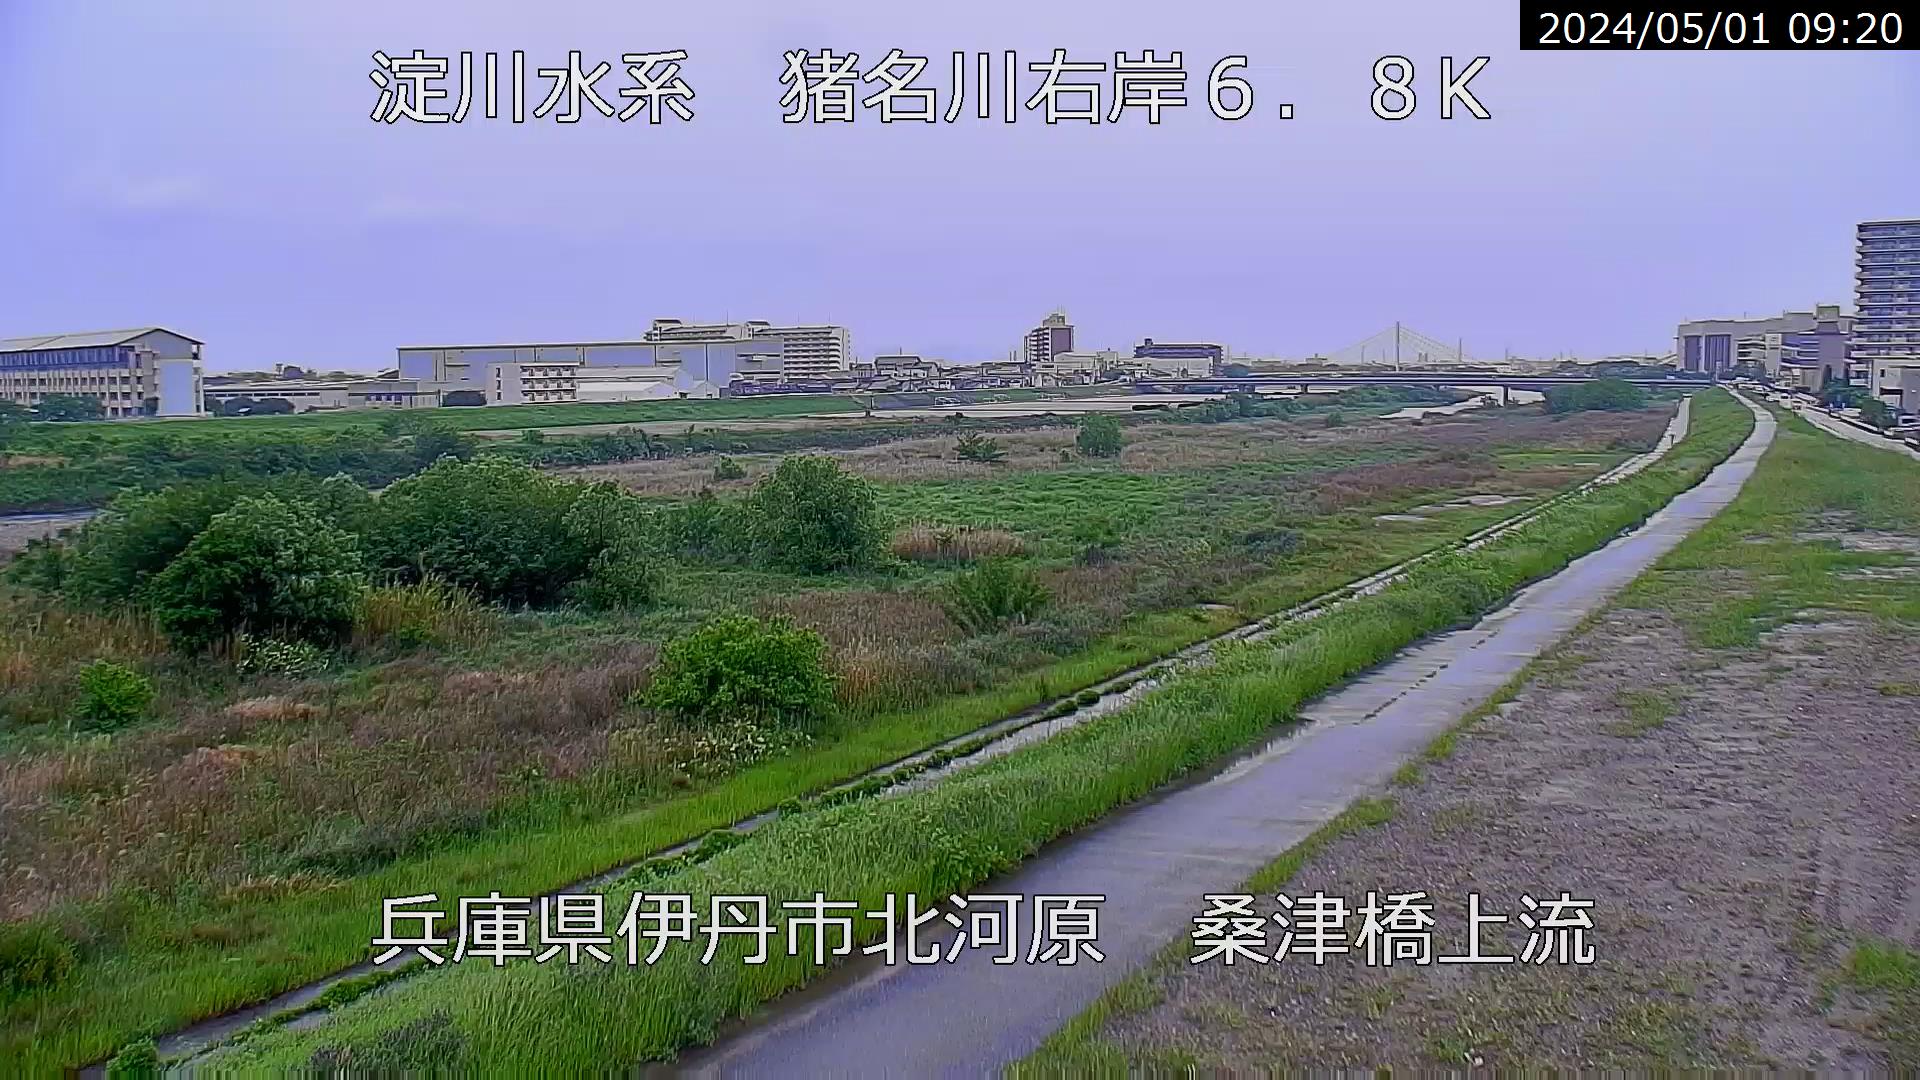 兵庫県の河川ライブカメラ｢猪名川 伊丹市北河原｣のライブ画像